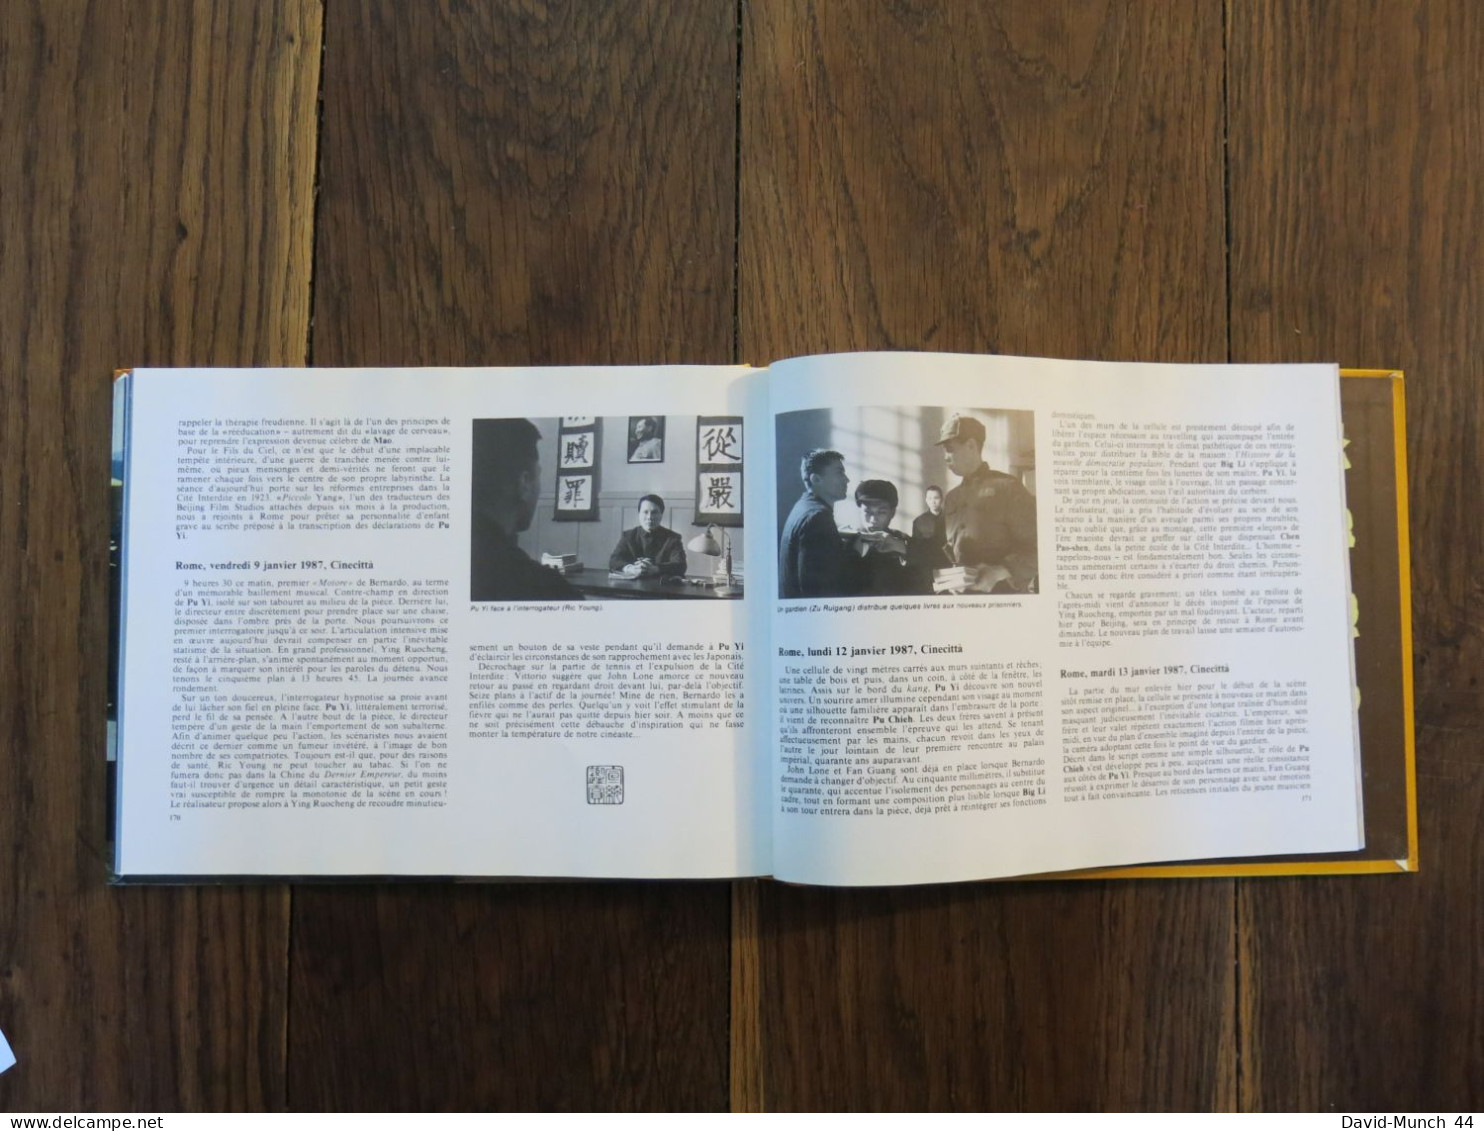 Ombres jaunes, Journal de tournage " Le Dernier empereur " de Bernardo Bertolucci de F.S. Gérard. Cahiers du cinéma.1987